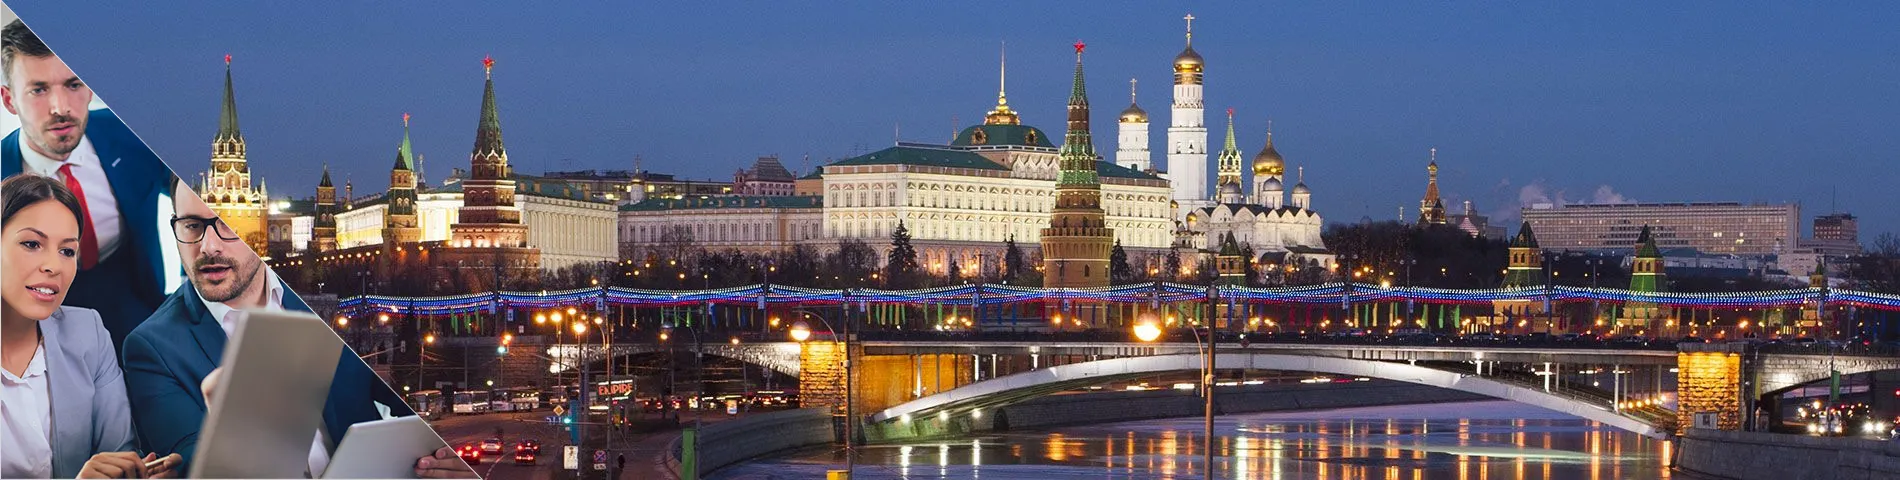 Moscou - Grup Combinat: Estàndard i Negocis  